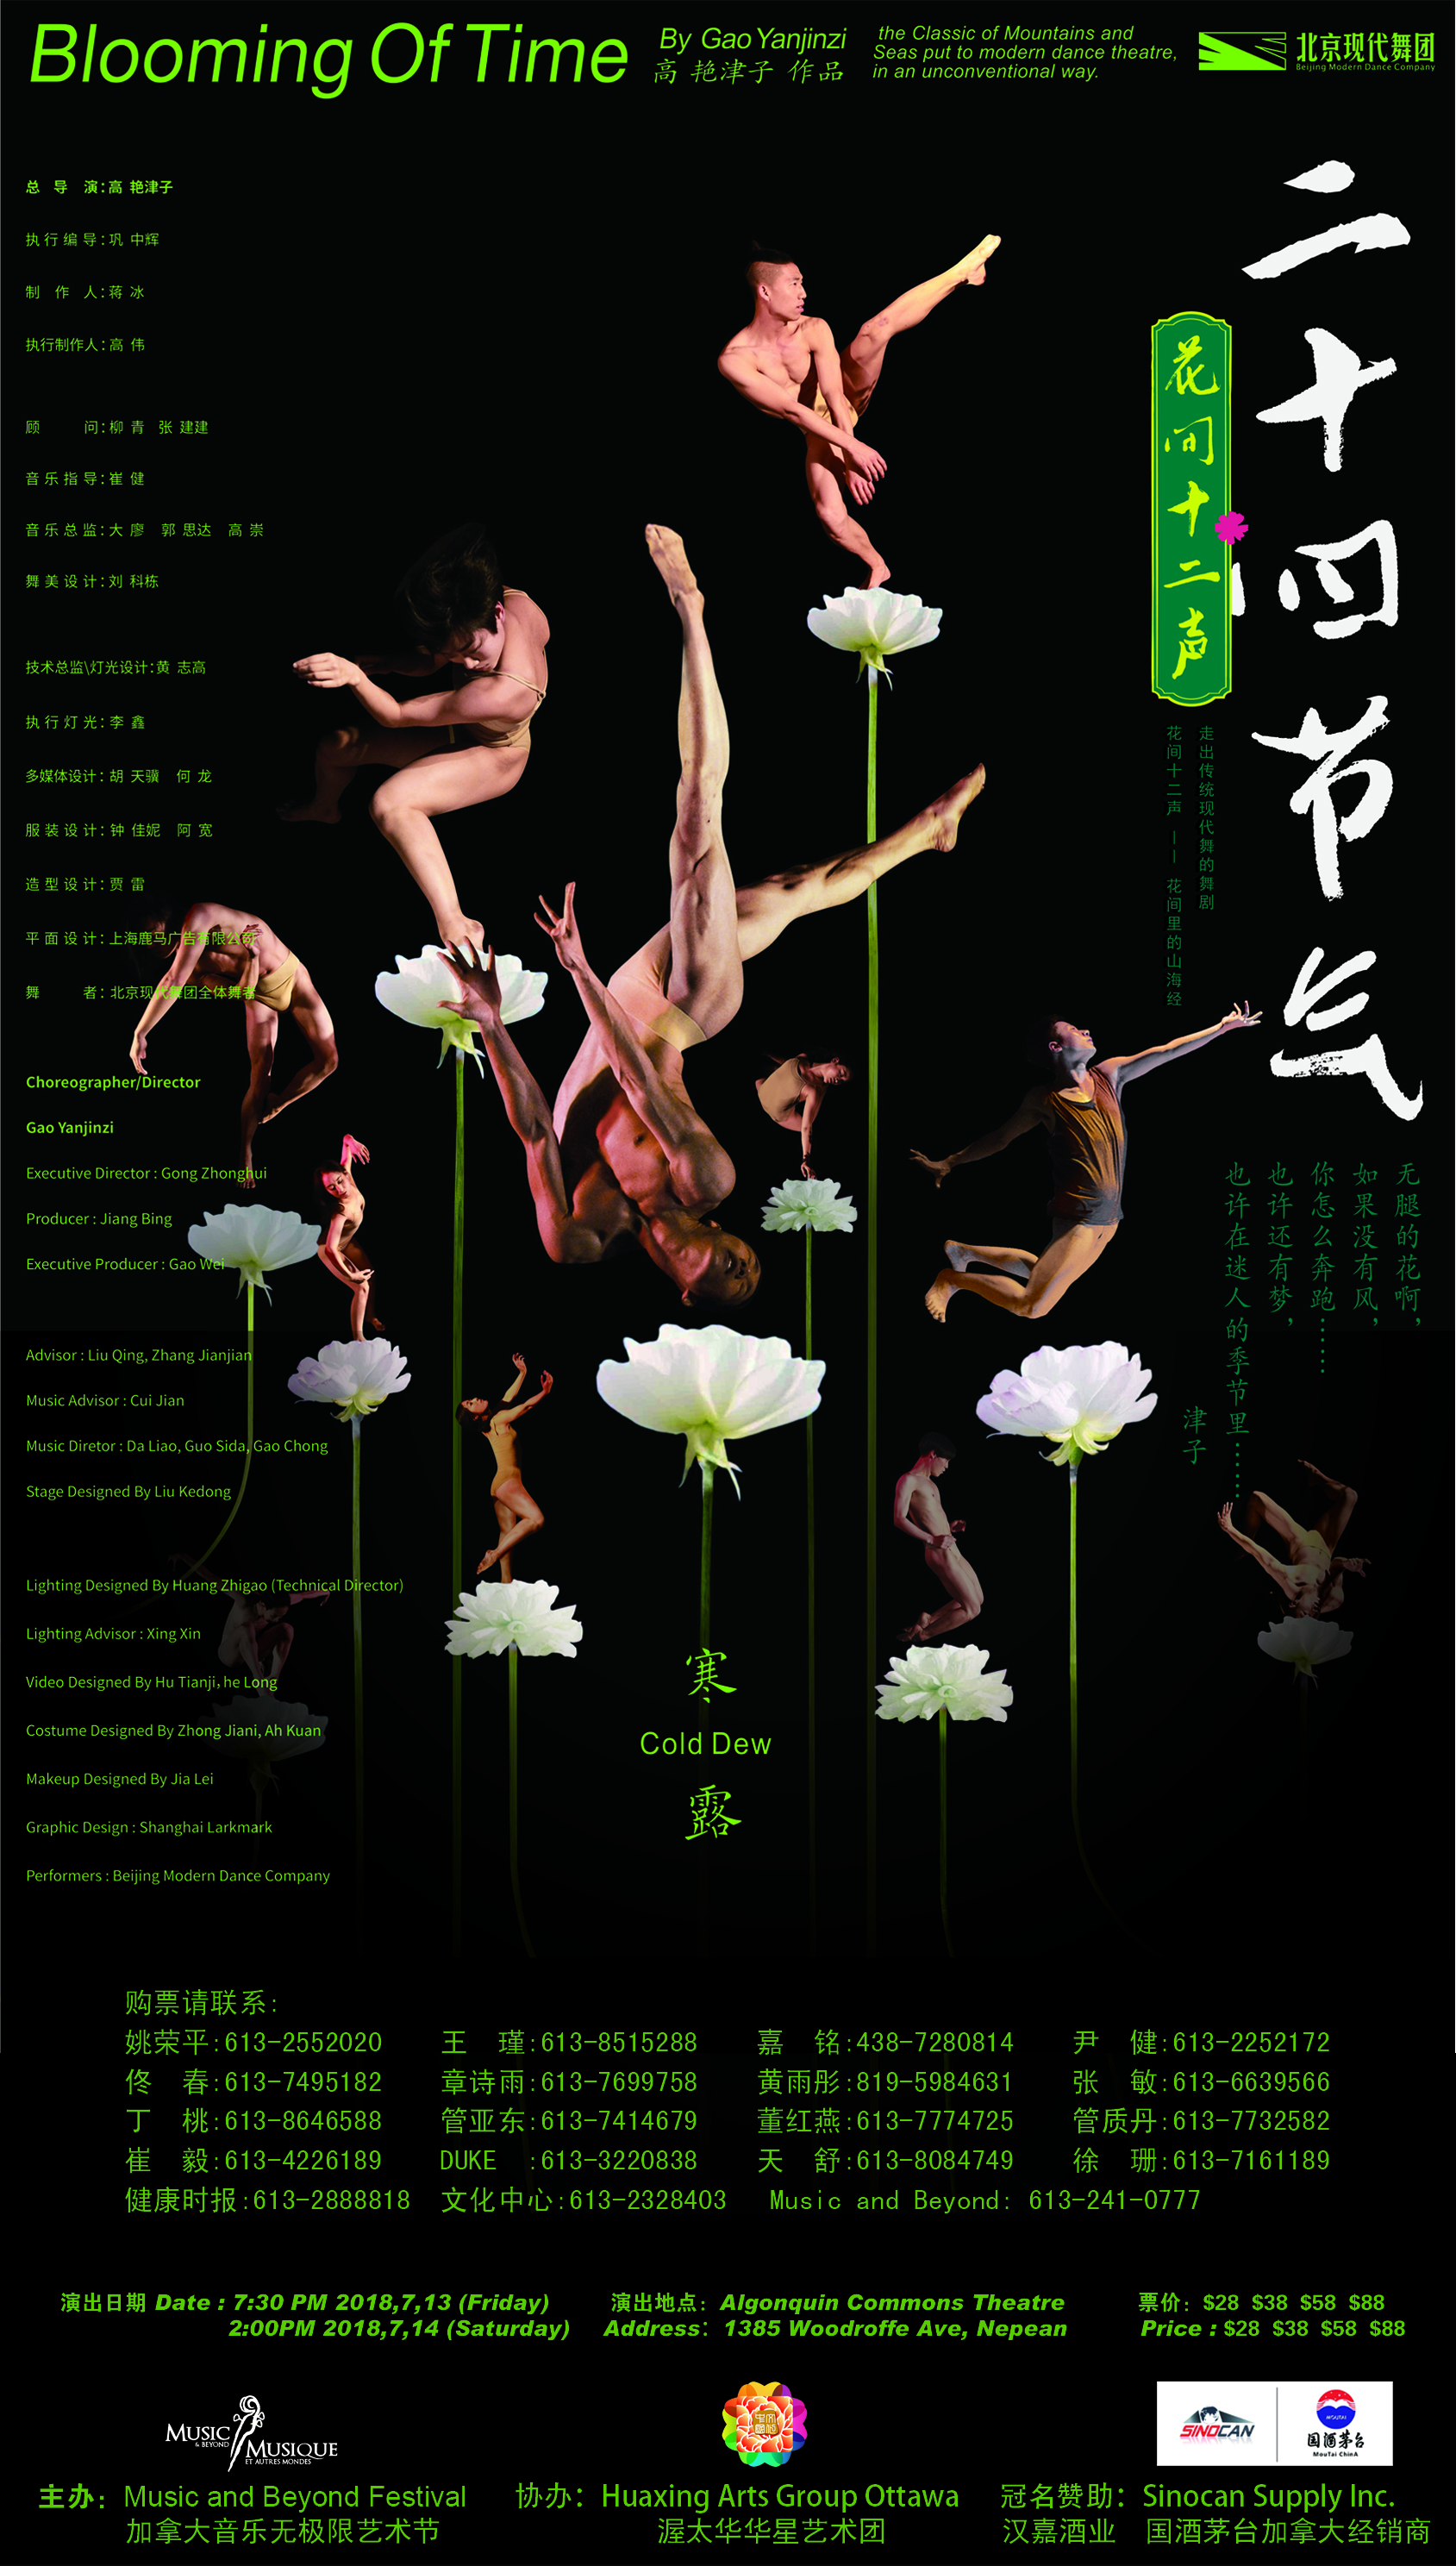 加拿大音乐无极限音乐节 特邀北京现代舞团隆重献演舞剧“二十四节气•花间十二声”